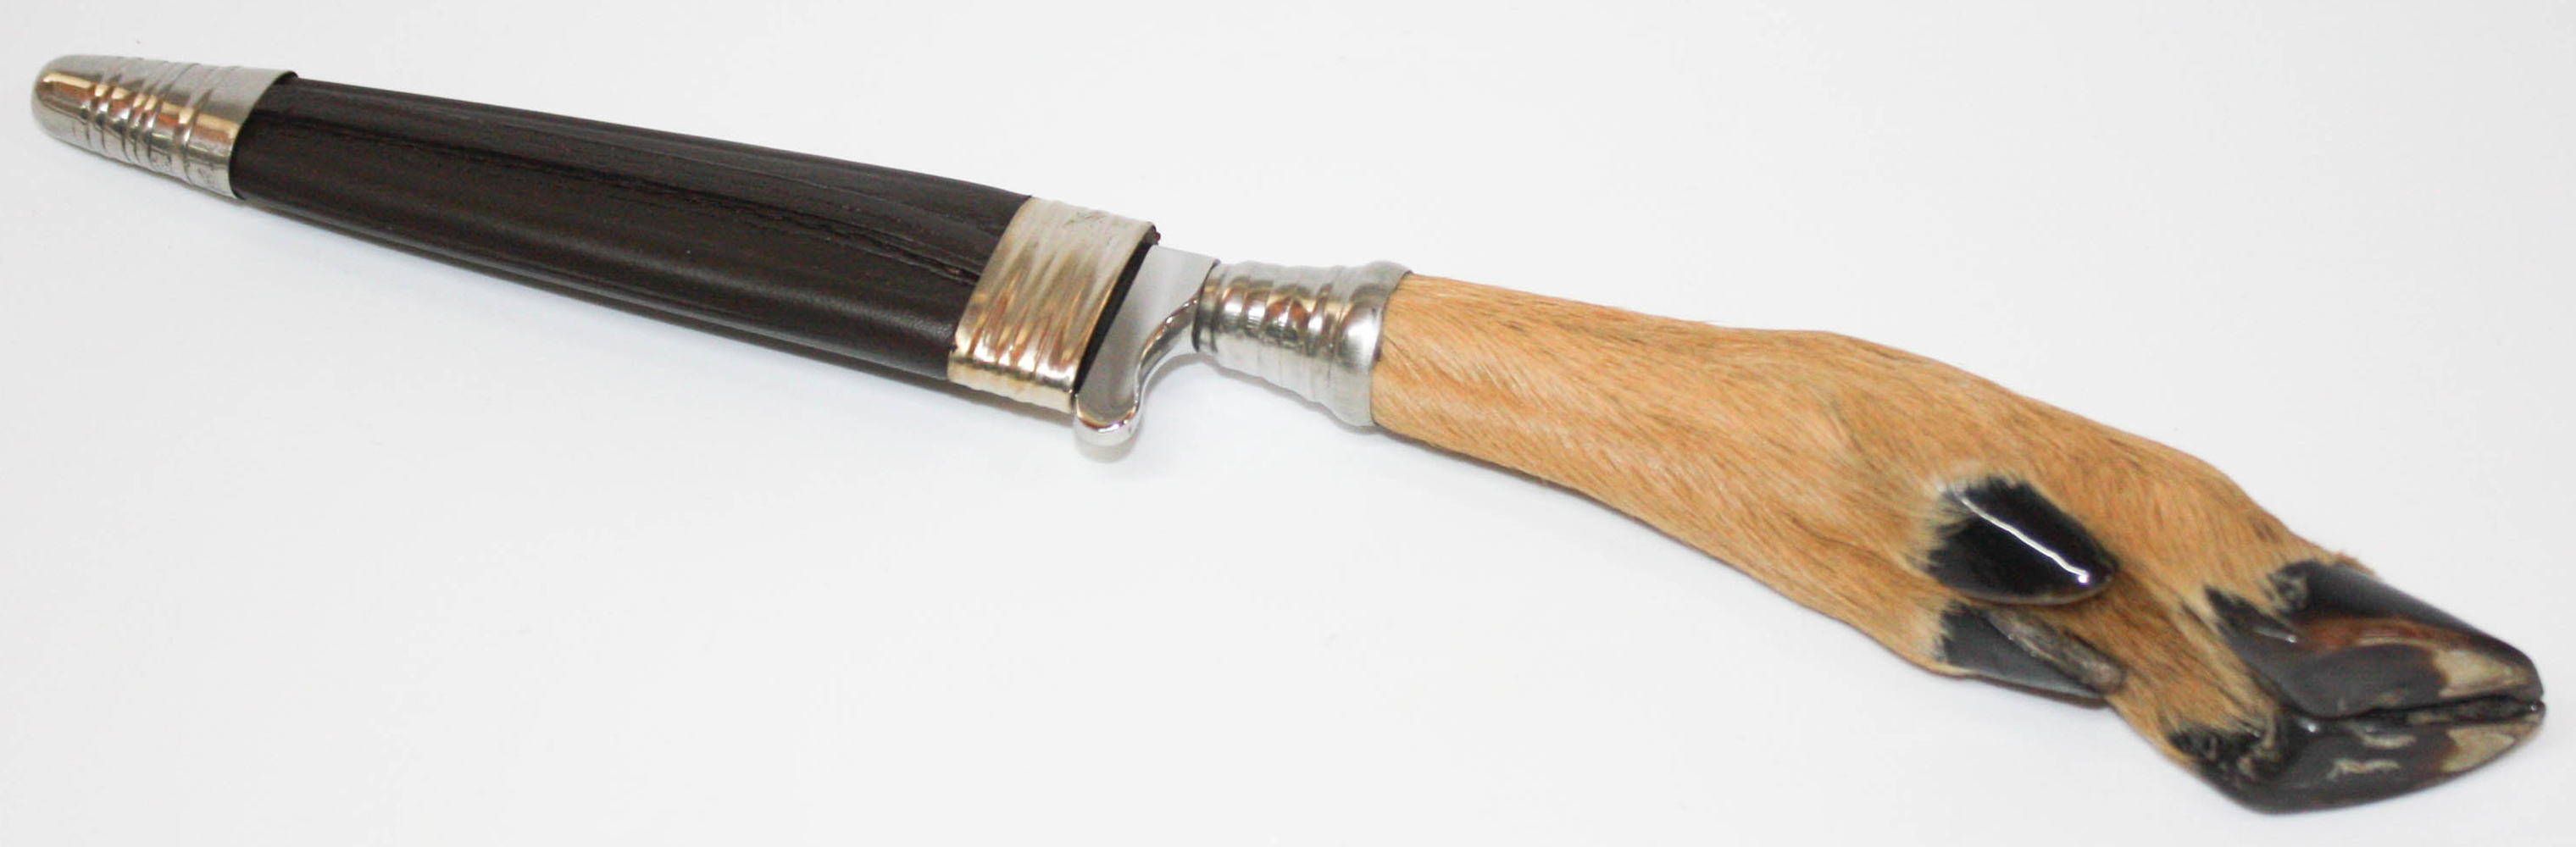 Linder Trachtenmesser Messer CLASSIC Klingenlänge 10.9 cm, 25.4 cm, 246111